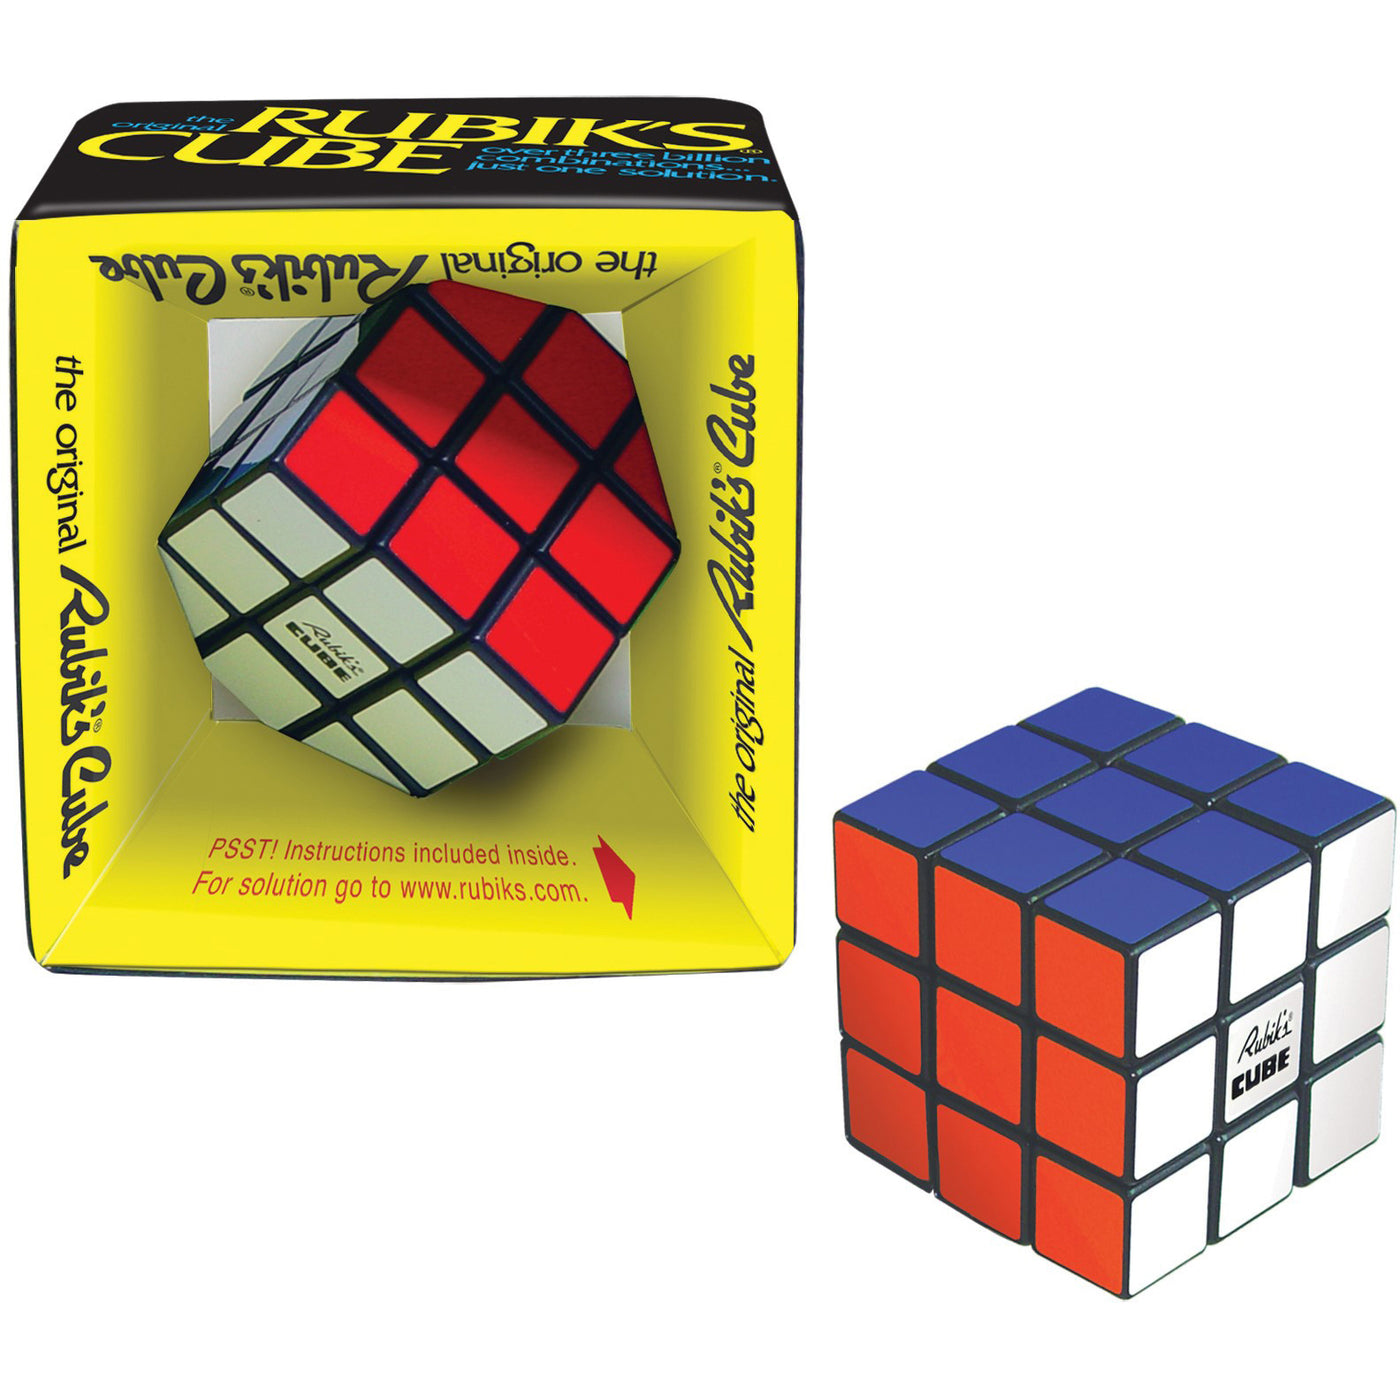 New Original Rubik's Cube game